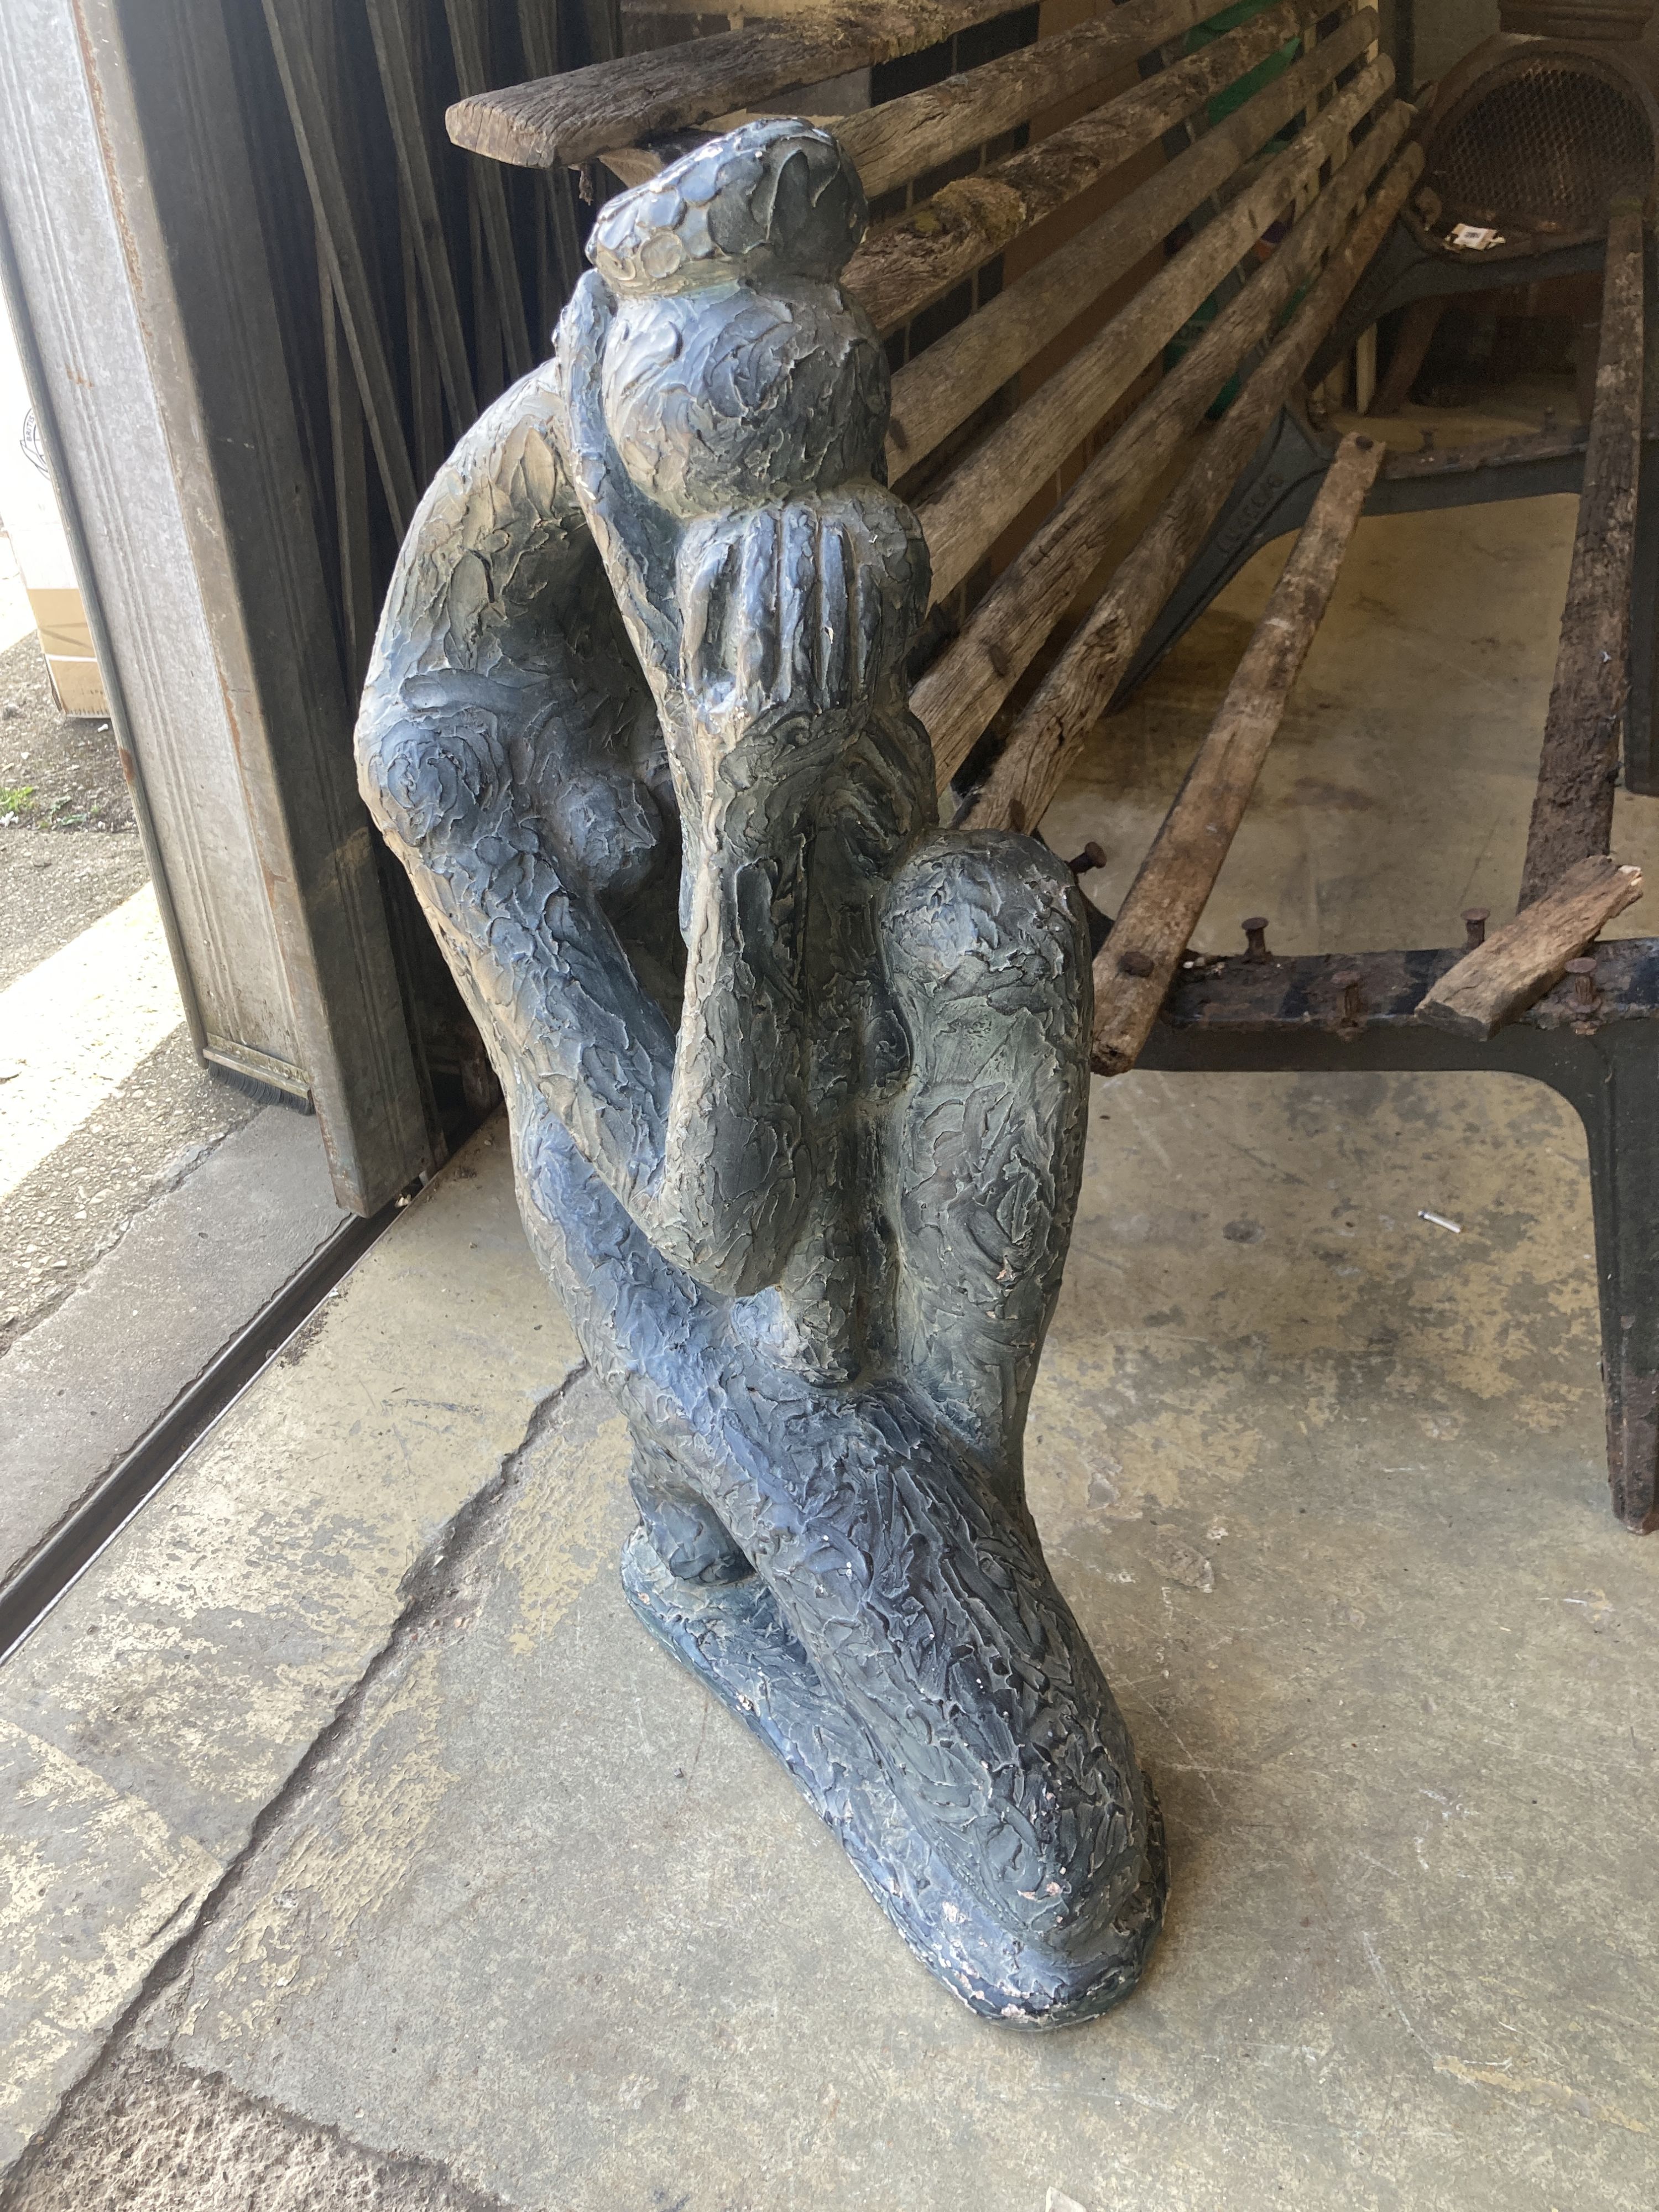 An Austin sculpture Durastone figure of a crouching girl